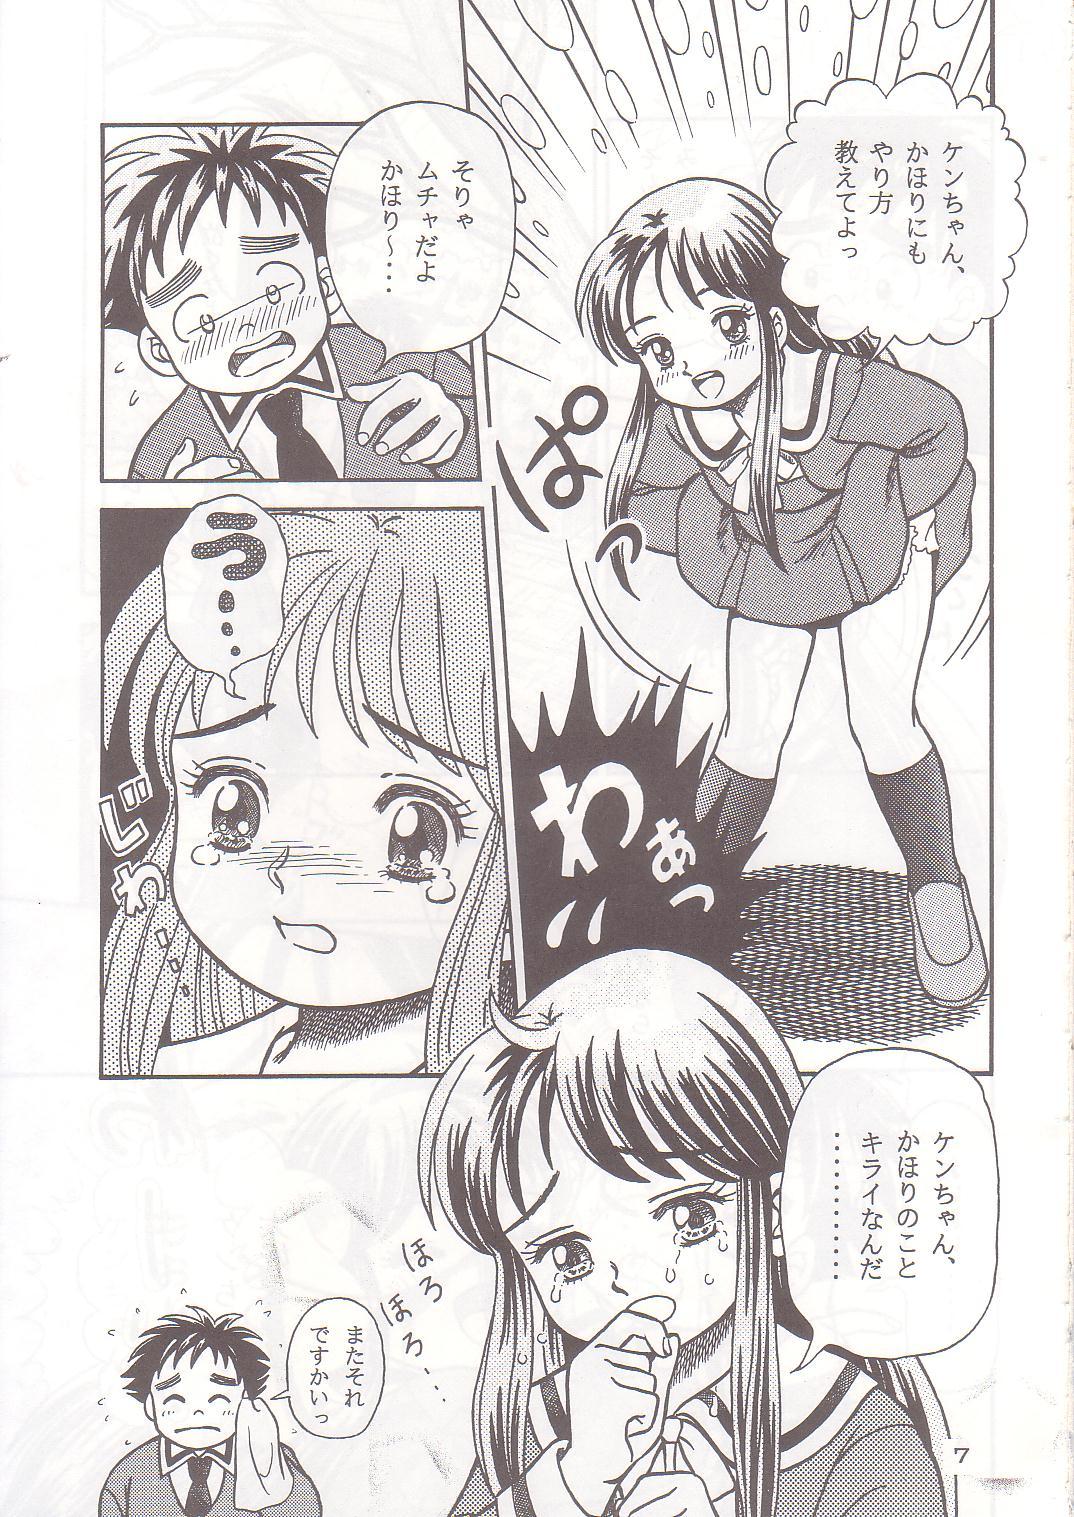 Petite Teen Okosama Shijou Shugi 1 - Dokkiri doctor Suckingdick - Page 6